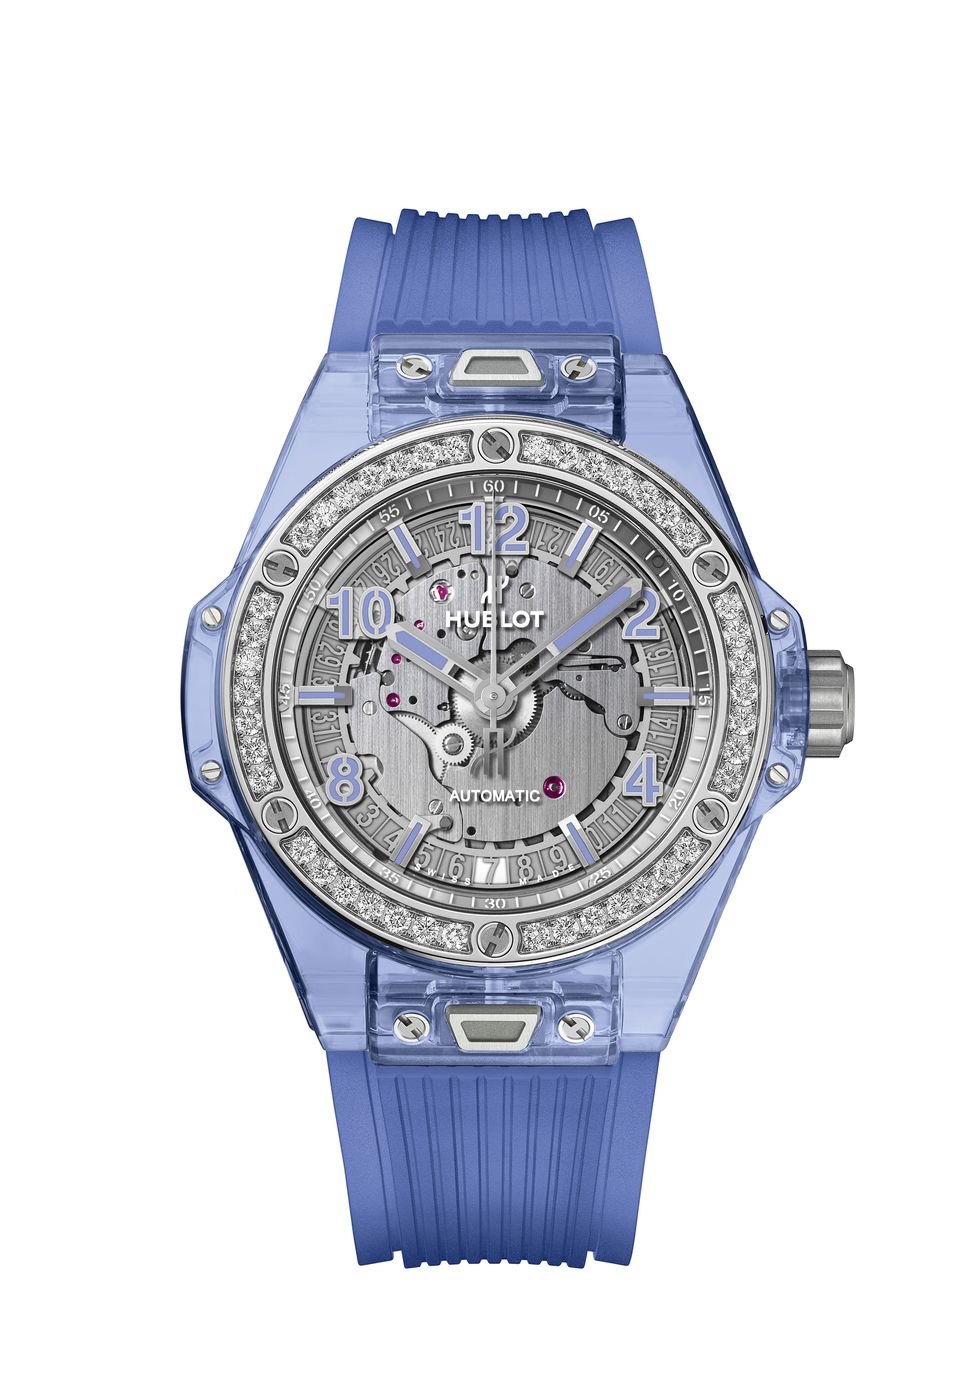 Big Bang One Click系列藍色藍寶石腕錶